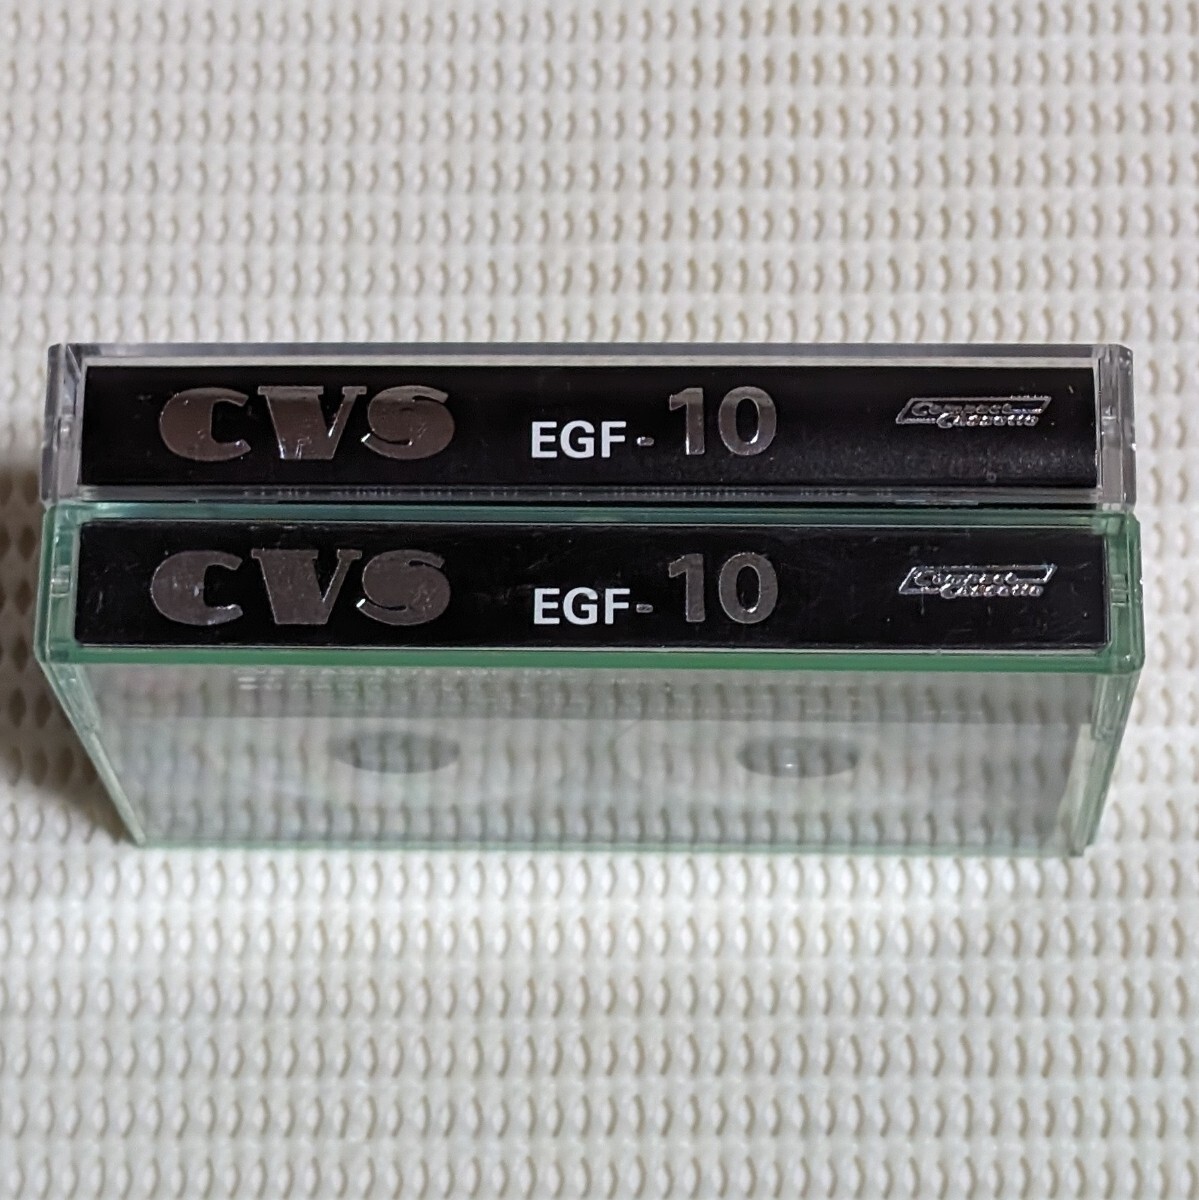  retro recording settled cassette tape CVS EGF-10× 2 ps open reel manner cassette tape maxell METAL Capsule70 metal cassette tape USED